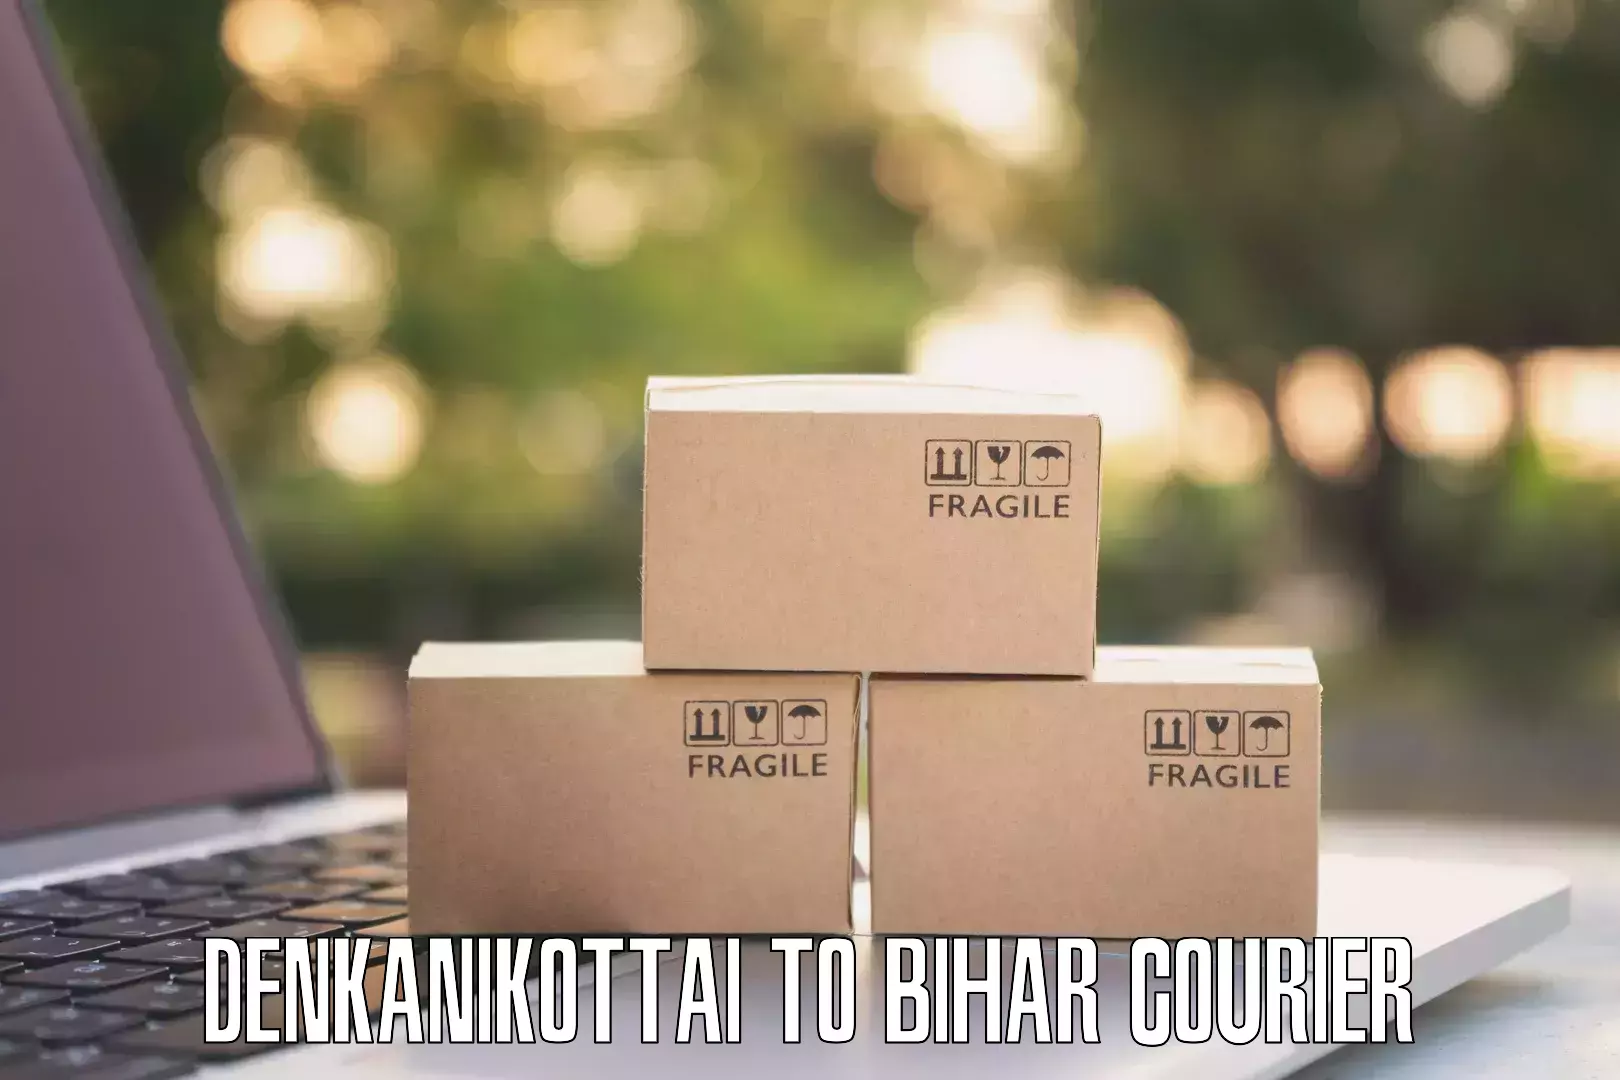 Reliable courier services Denkanikottai to Mairwa